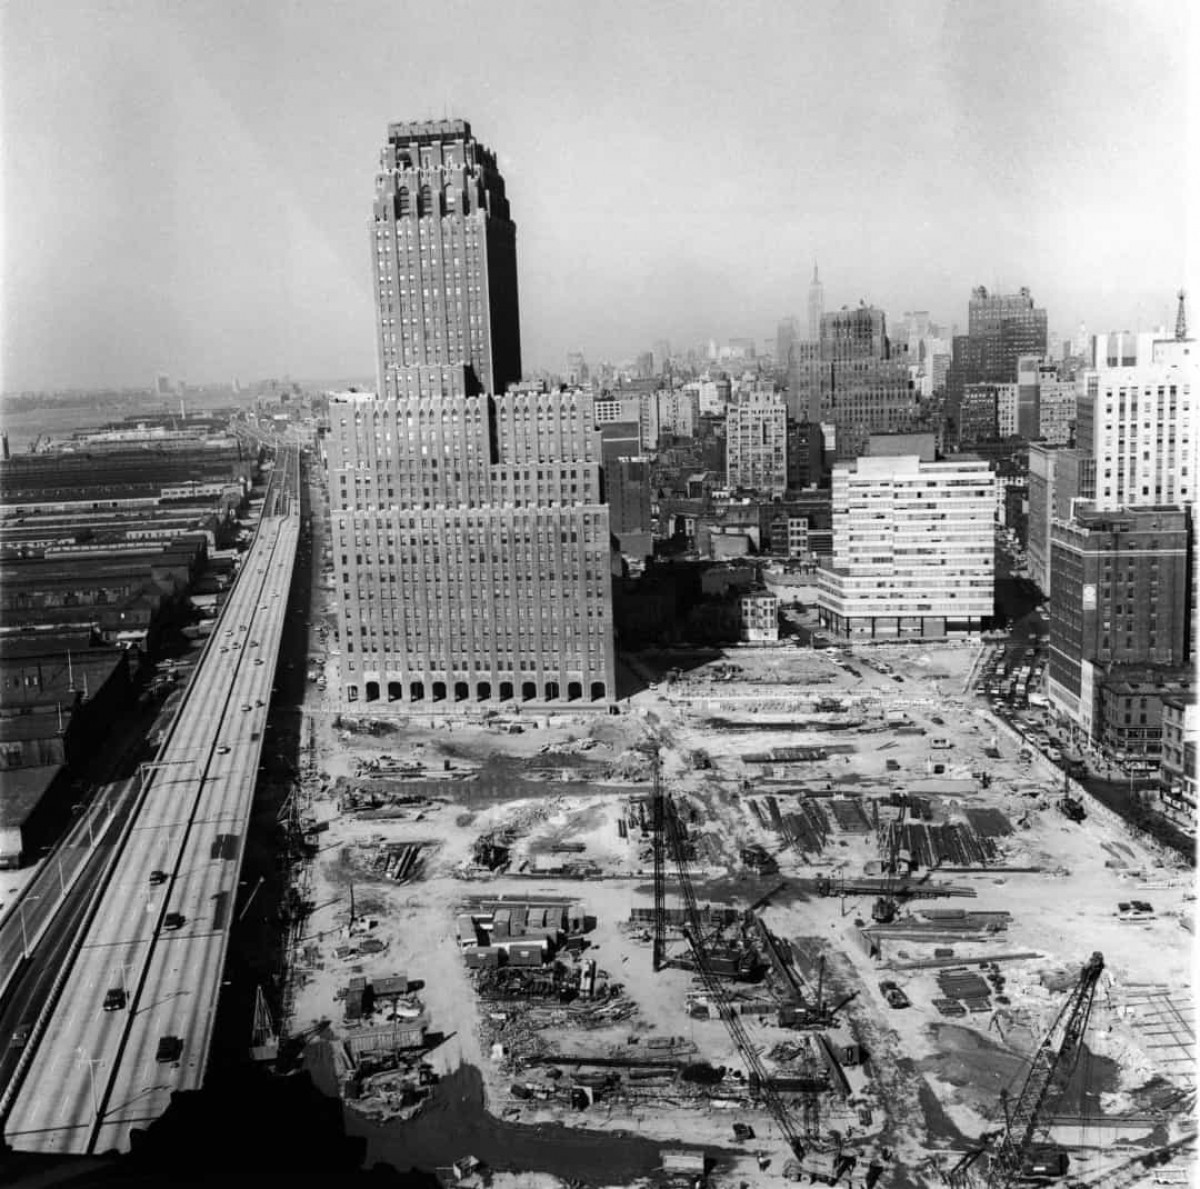 Để xây dựng trên địa điểm đã chọn ở Manhattan, các kỹ sư phải đào móng sâu 21m. Sau đó, họ thả một lồng thép cao 7 tầng nặng khoảng 22 tấn vào lỗ và đổ bê tông để tạo móng cho tòa nhà. Vật liệu được sử dụng để xây dựng tòa nhà bao gồm 200.000 miếng thép, 4.828 km dây điện, 324.936 m3 bê tông, 40.000 cửa ra vào, 43.600 cửa sổ và 6 mẫu đá cẩm thạch.